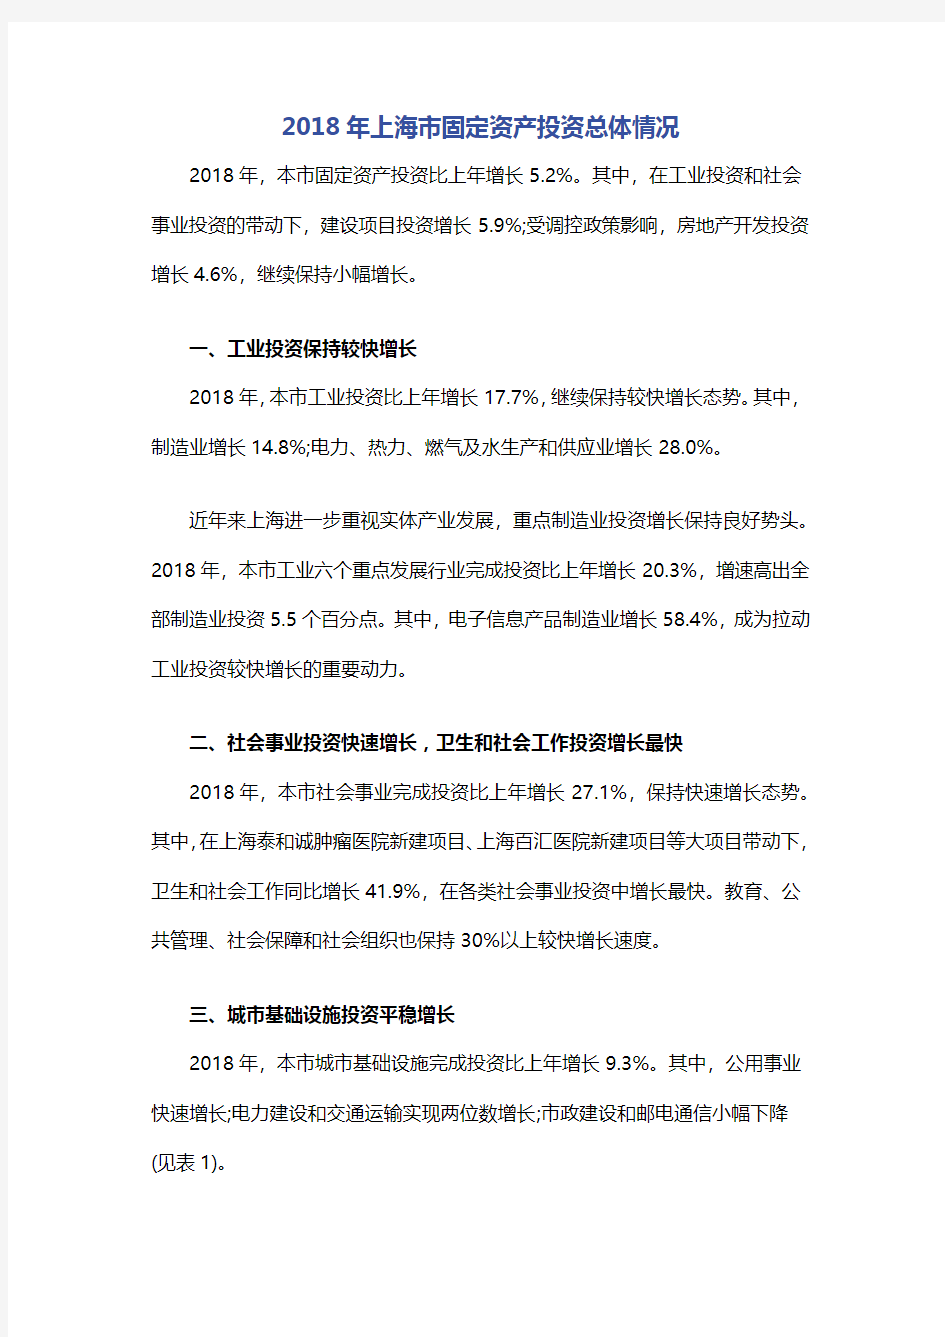 2018年上海市固定资产投资总体情况